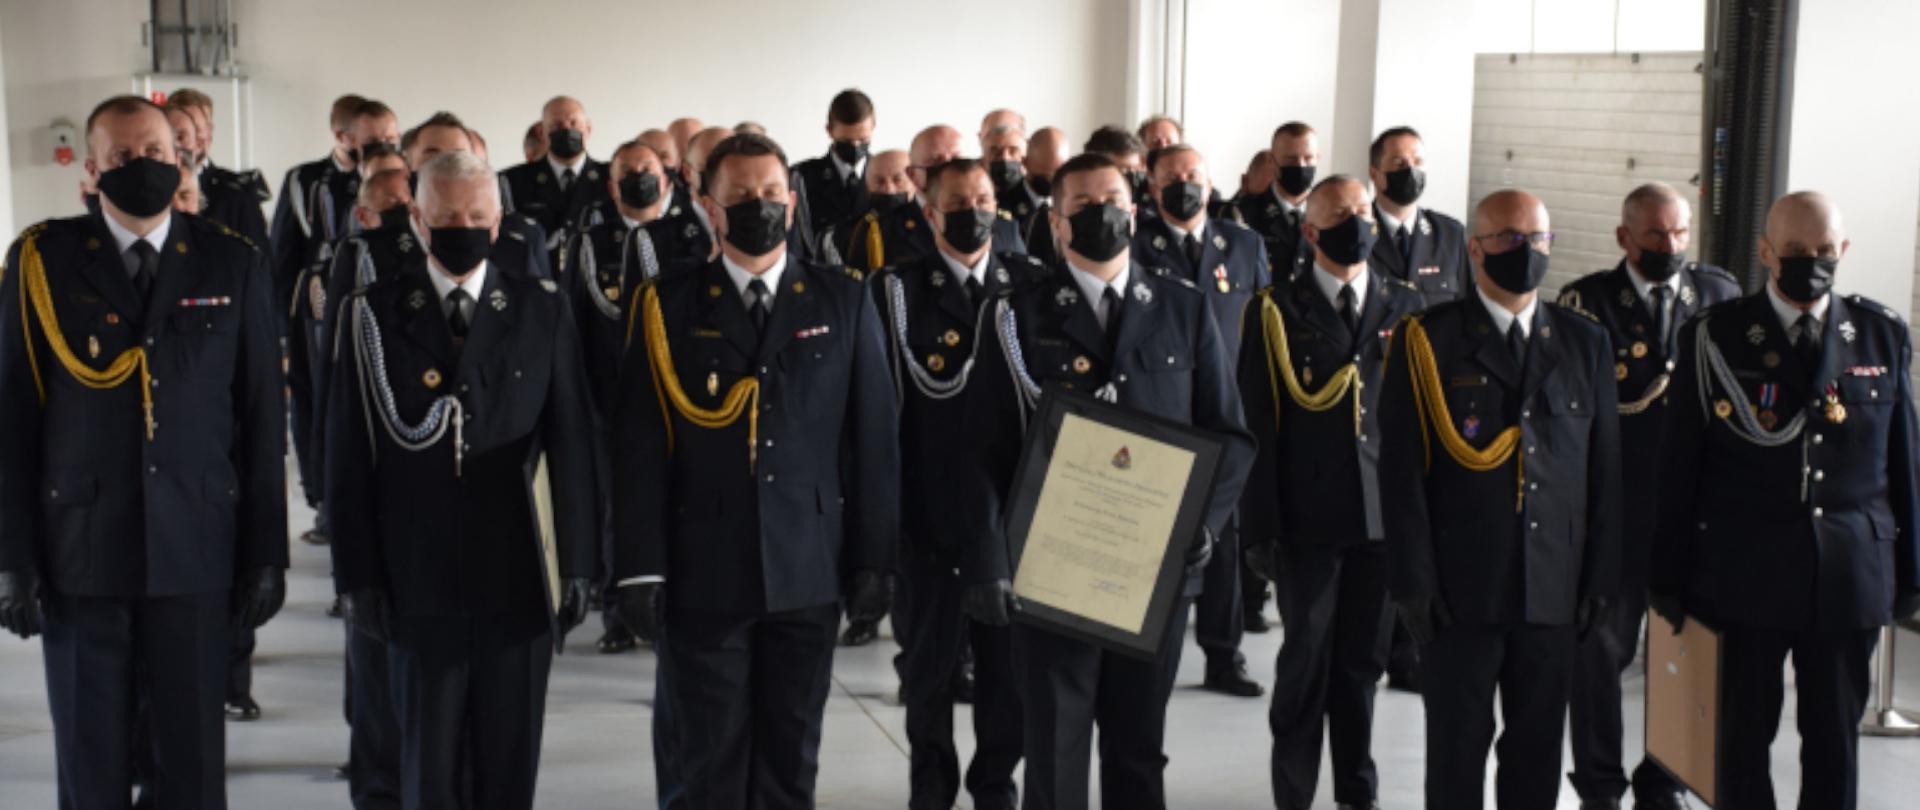 Prezesi OSP z terenu woj. śląskiego ubrani w mundury galowe, stojący w szeregu 